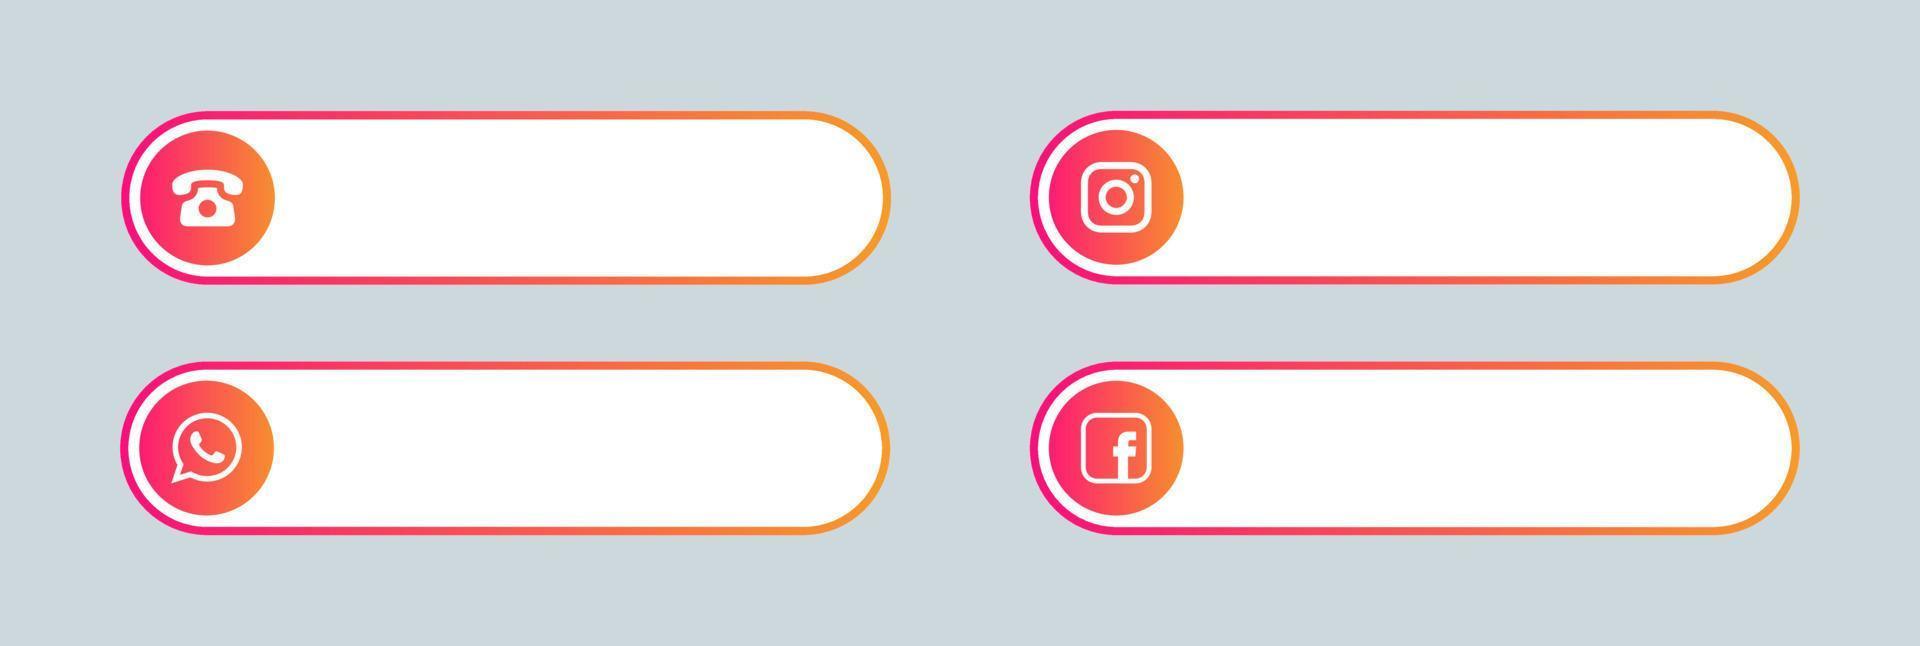 las redes sociales populares y el tercer conjunto de iconos de contacto inferior. vector